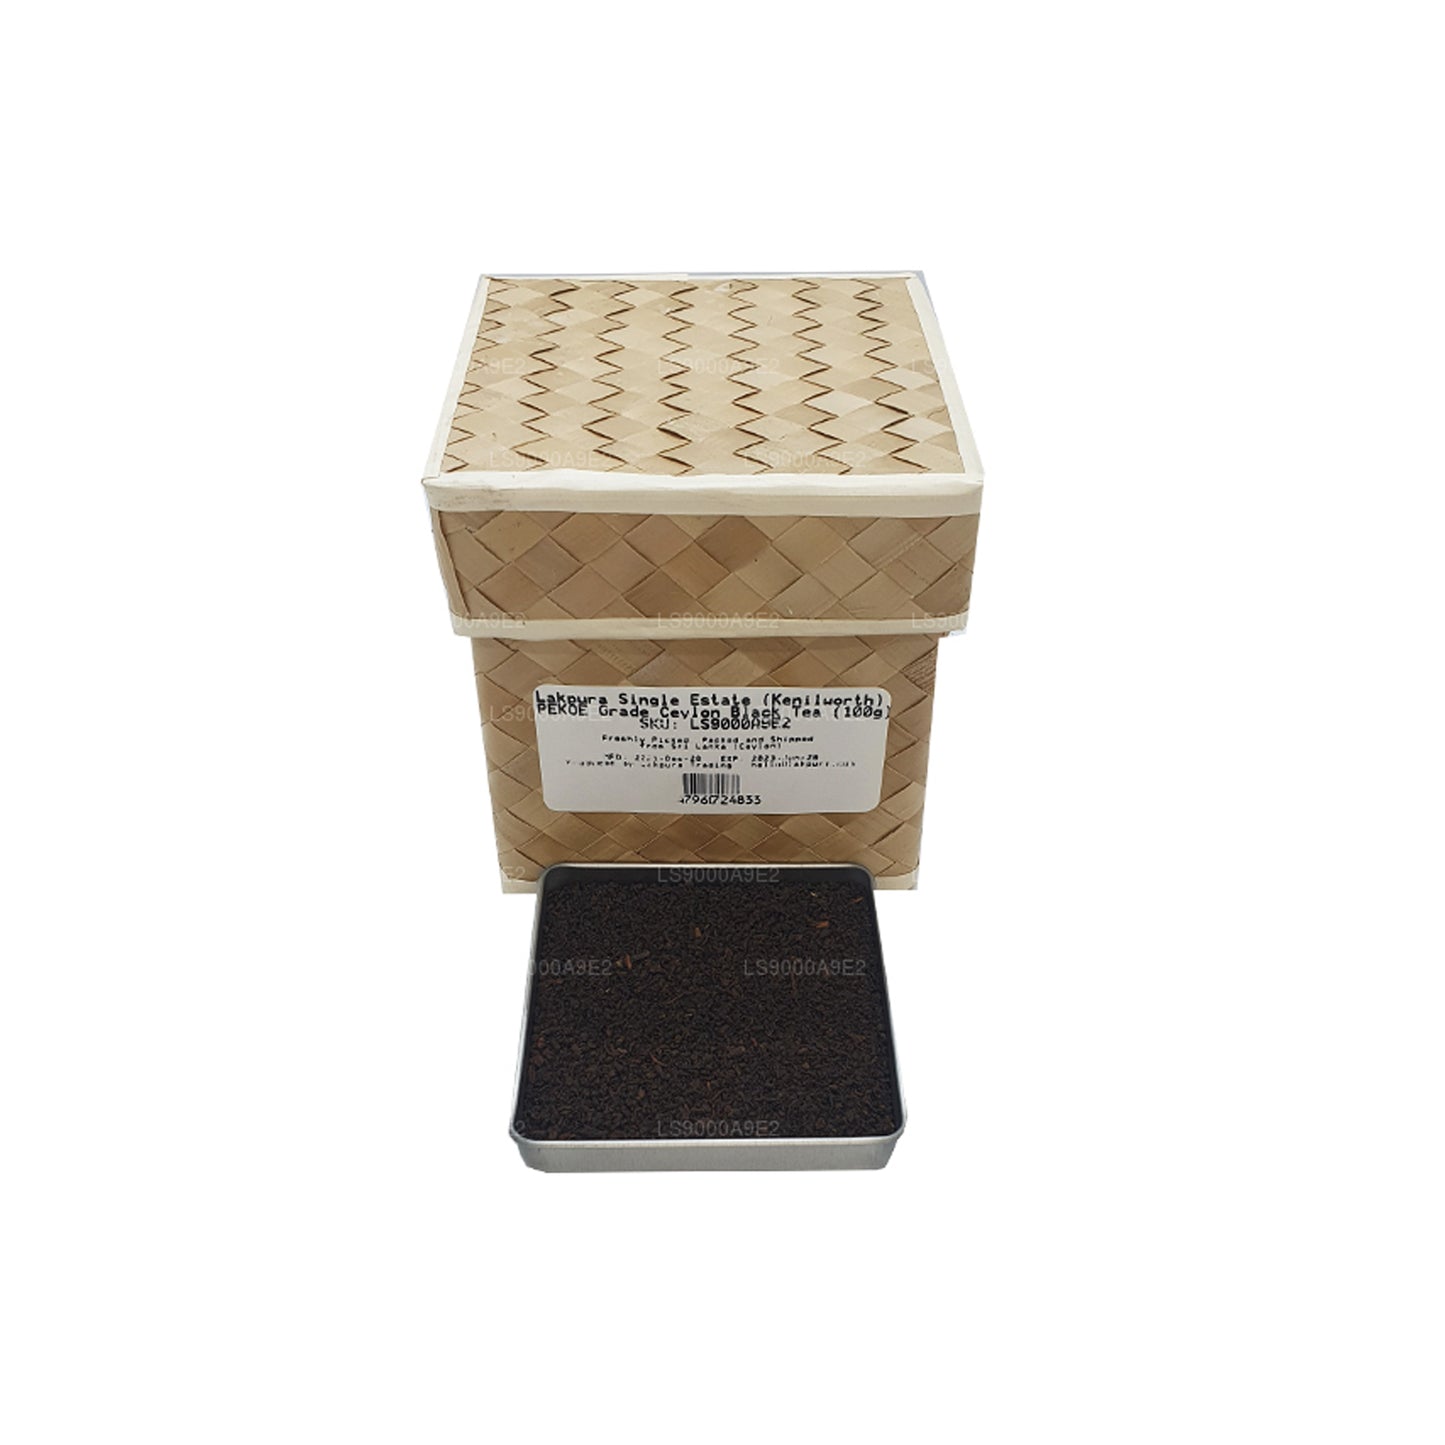 شاي لابورا سينغل إيستيت (كينيلورث) مصنوع من مادة PEKOE باللون الأسود السيلاني (100 غرام)